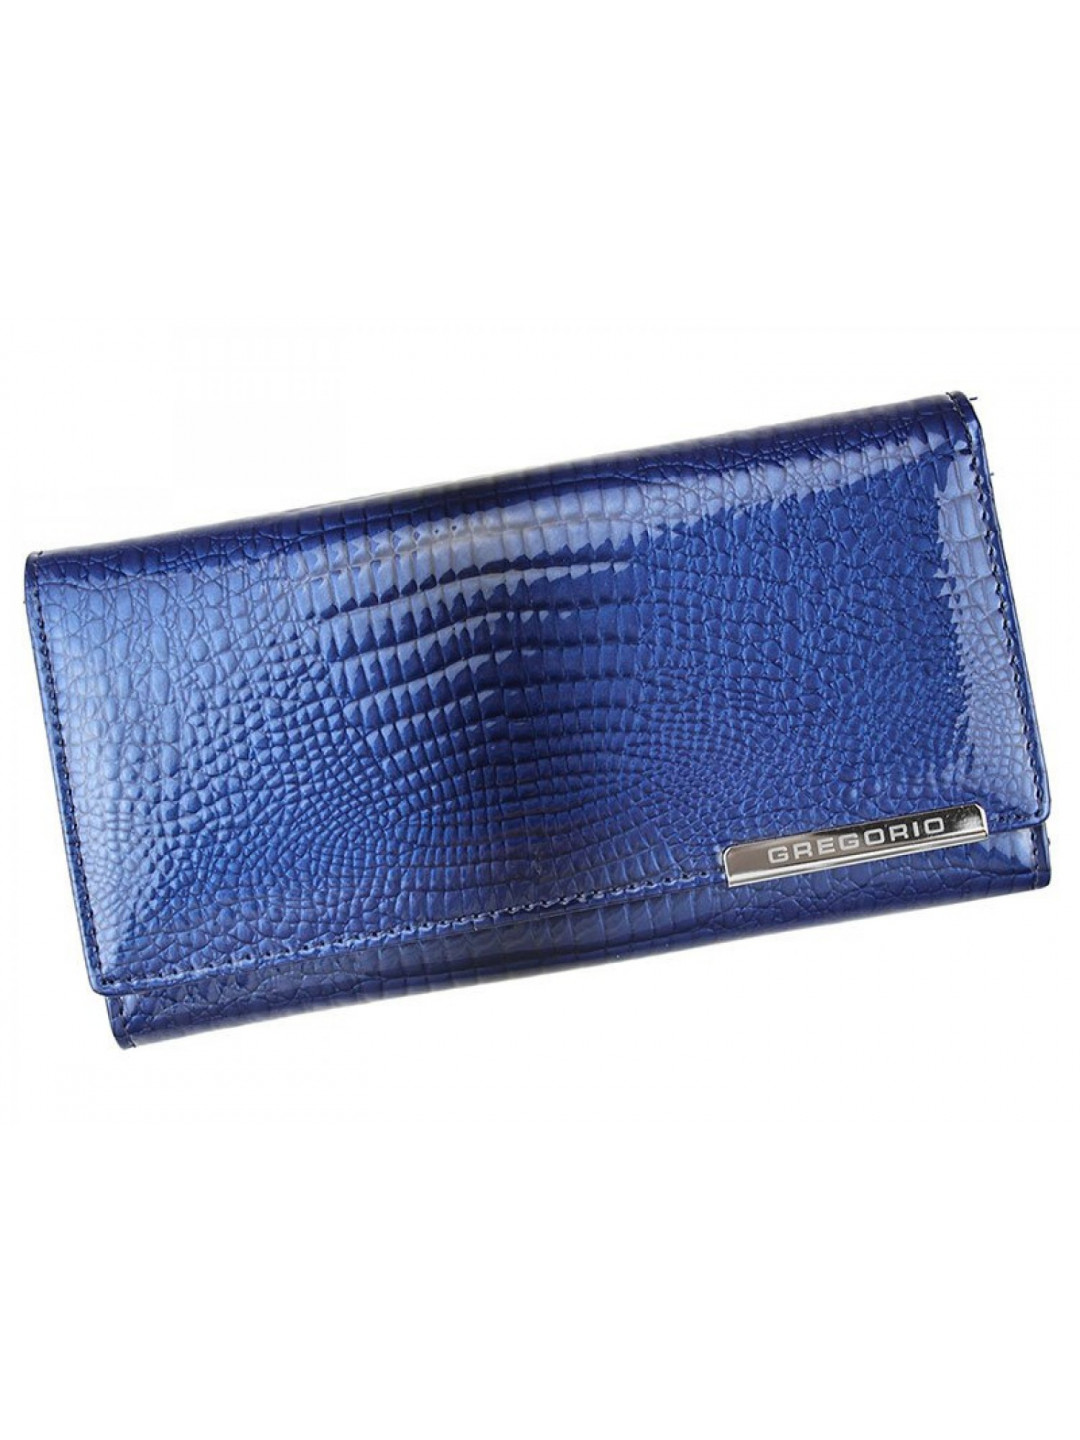 Luxusní dámská kožená peněženka s hadím vzorem Gregorio Sissi modrá